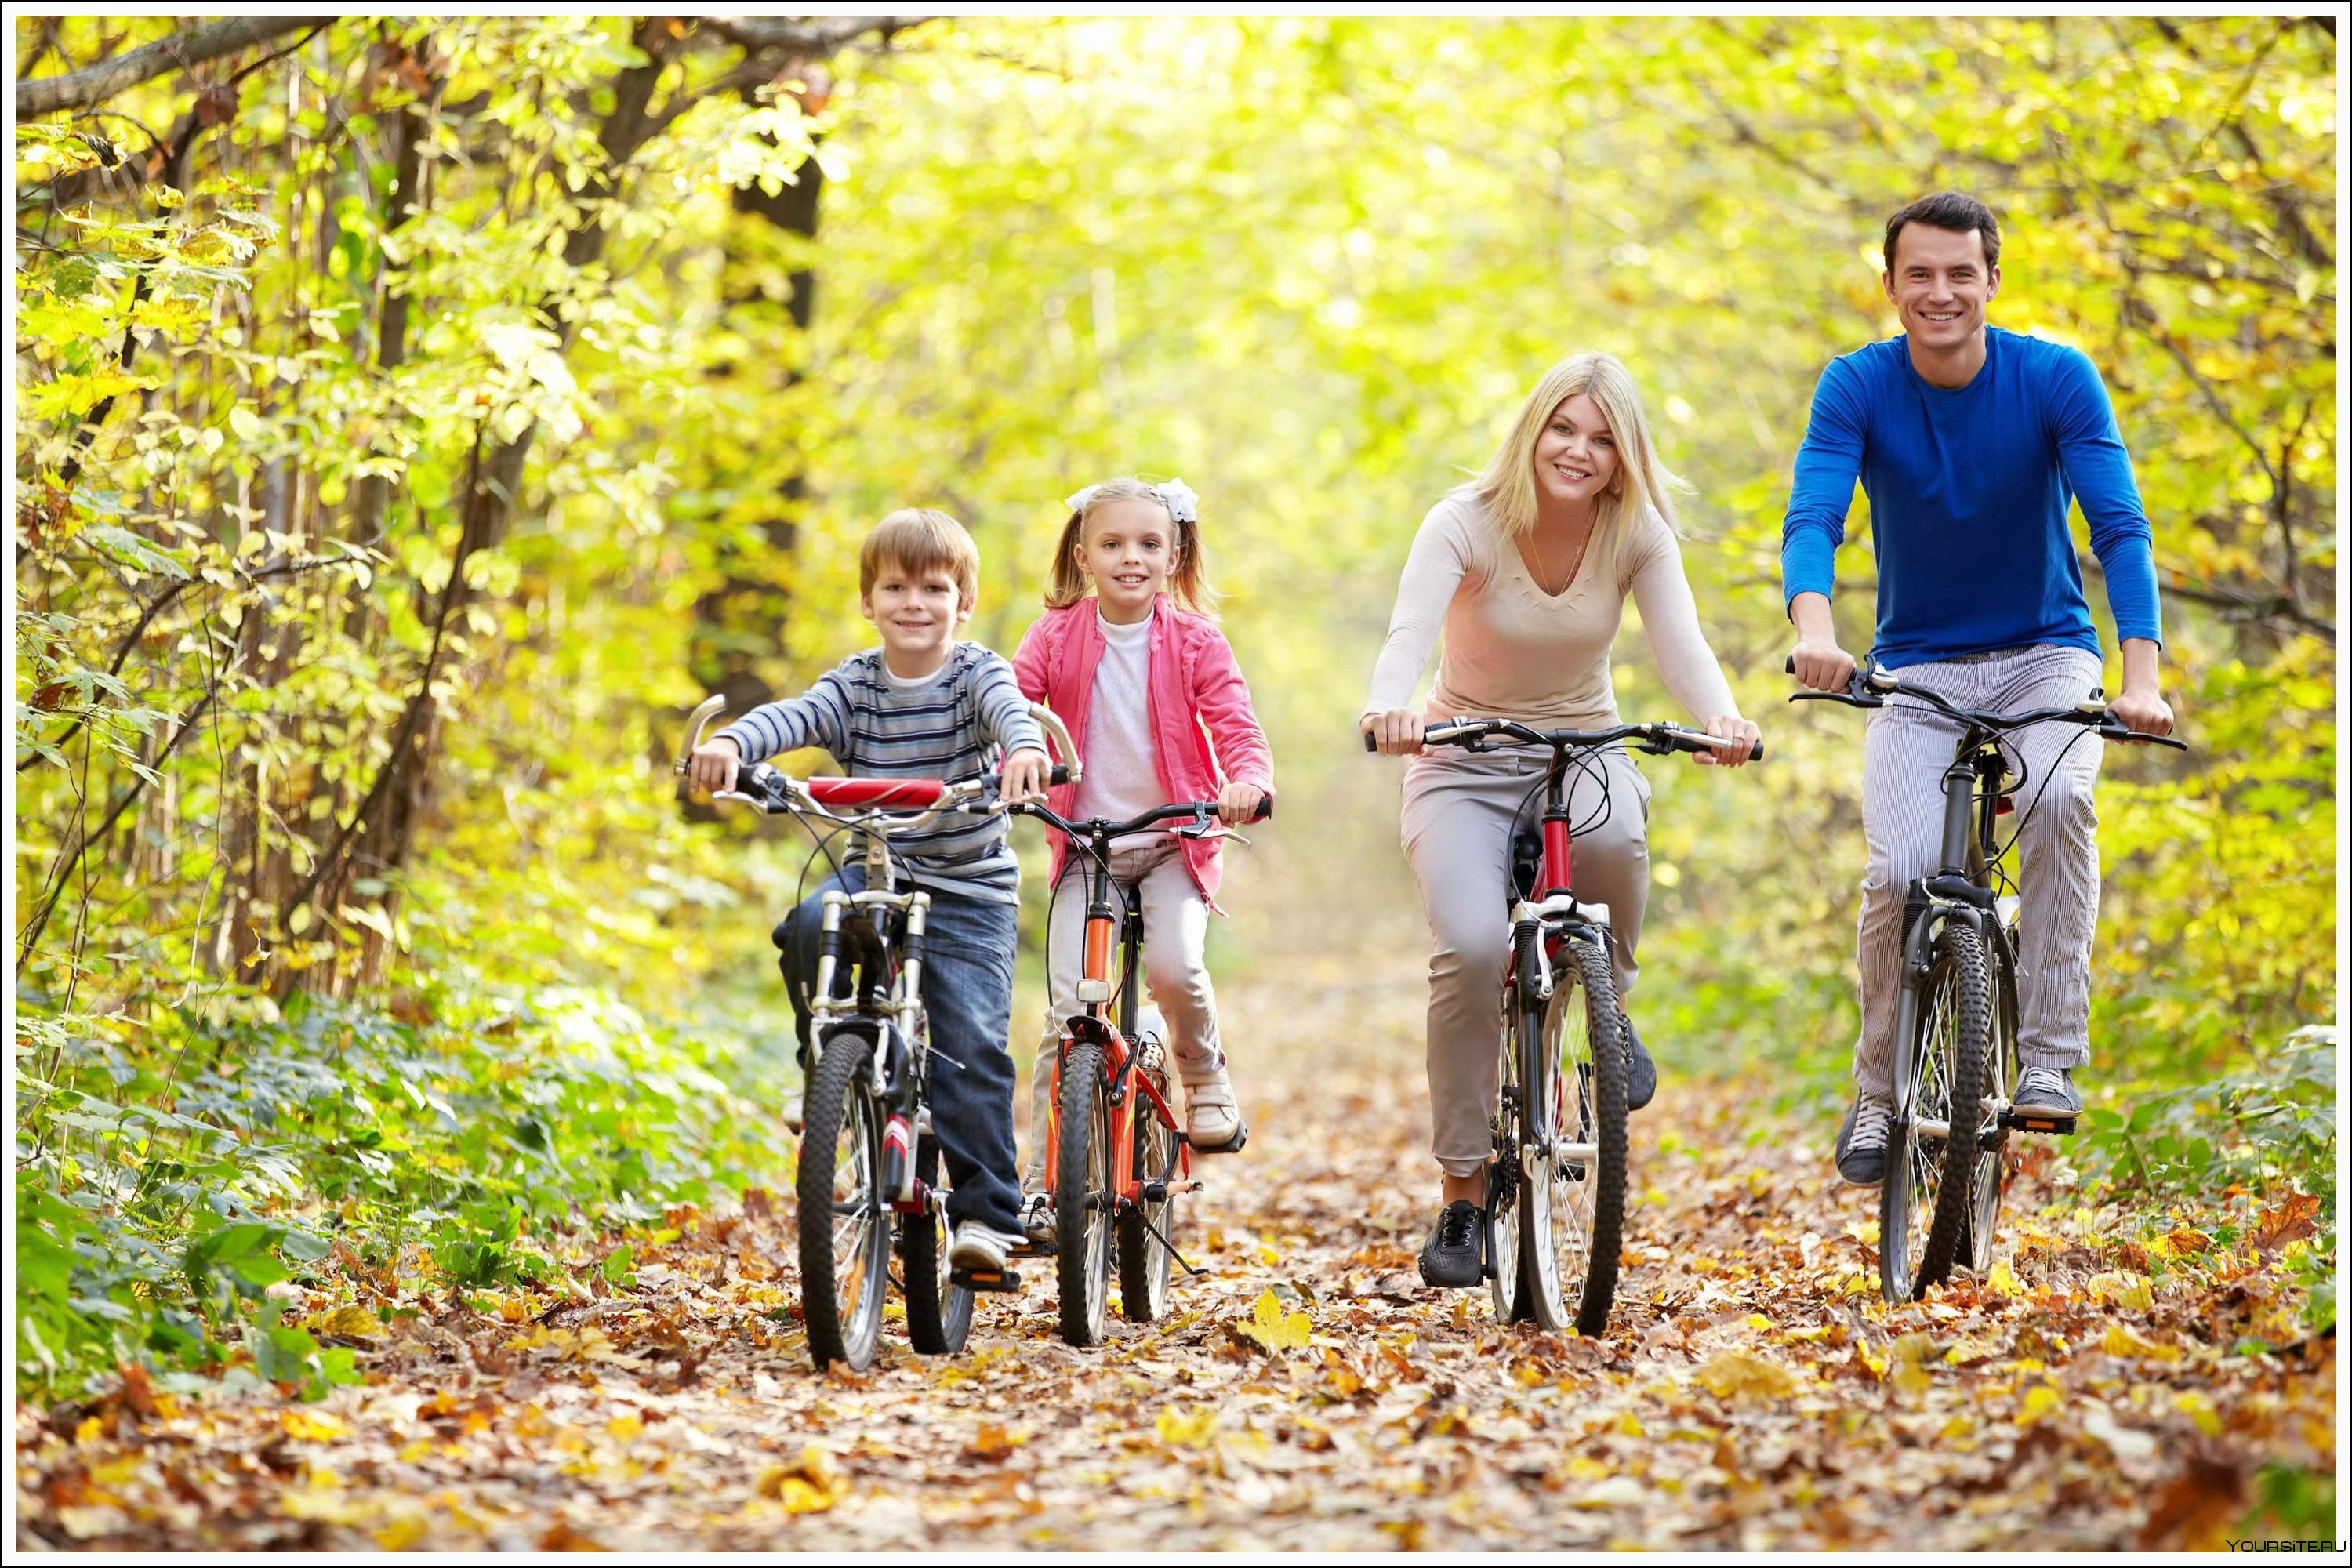 Находиться на свежем воздухе. Прогулки на свежем воздухе. Семья на прогулке. Прогулка на природе. Семья на велосипедах.